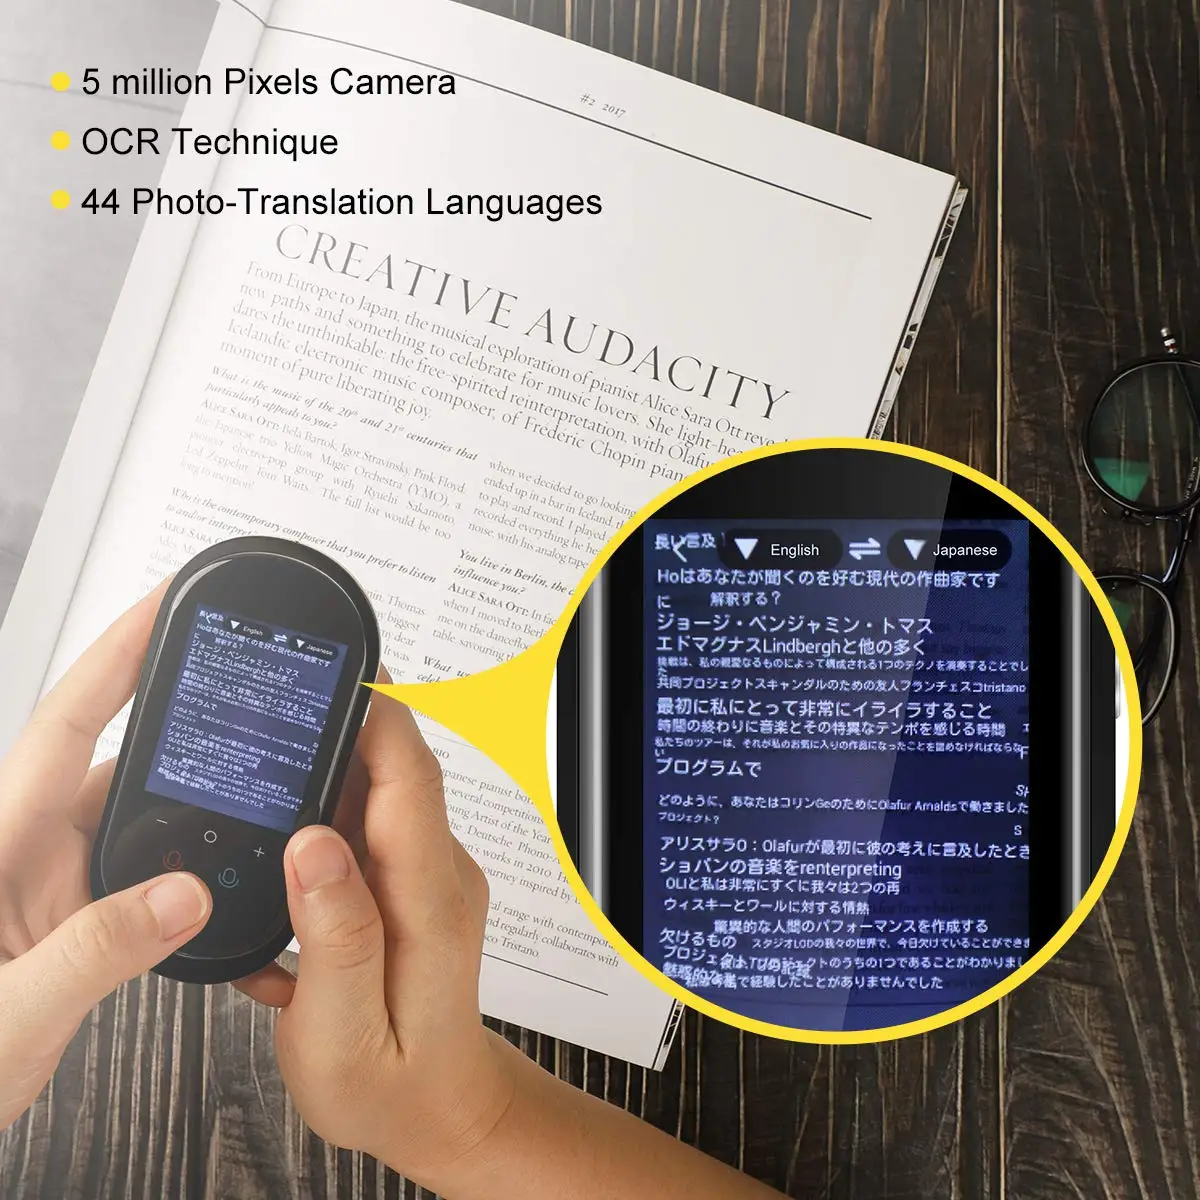 Устройство для перевода на 106 языках в реальном времени за рубежом